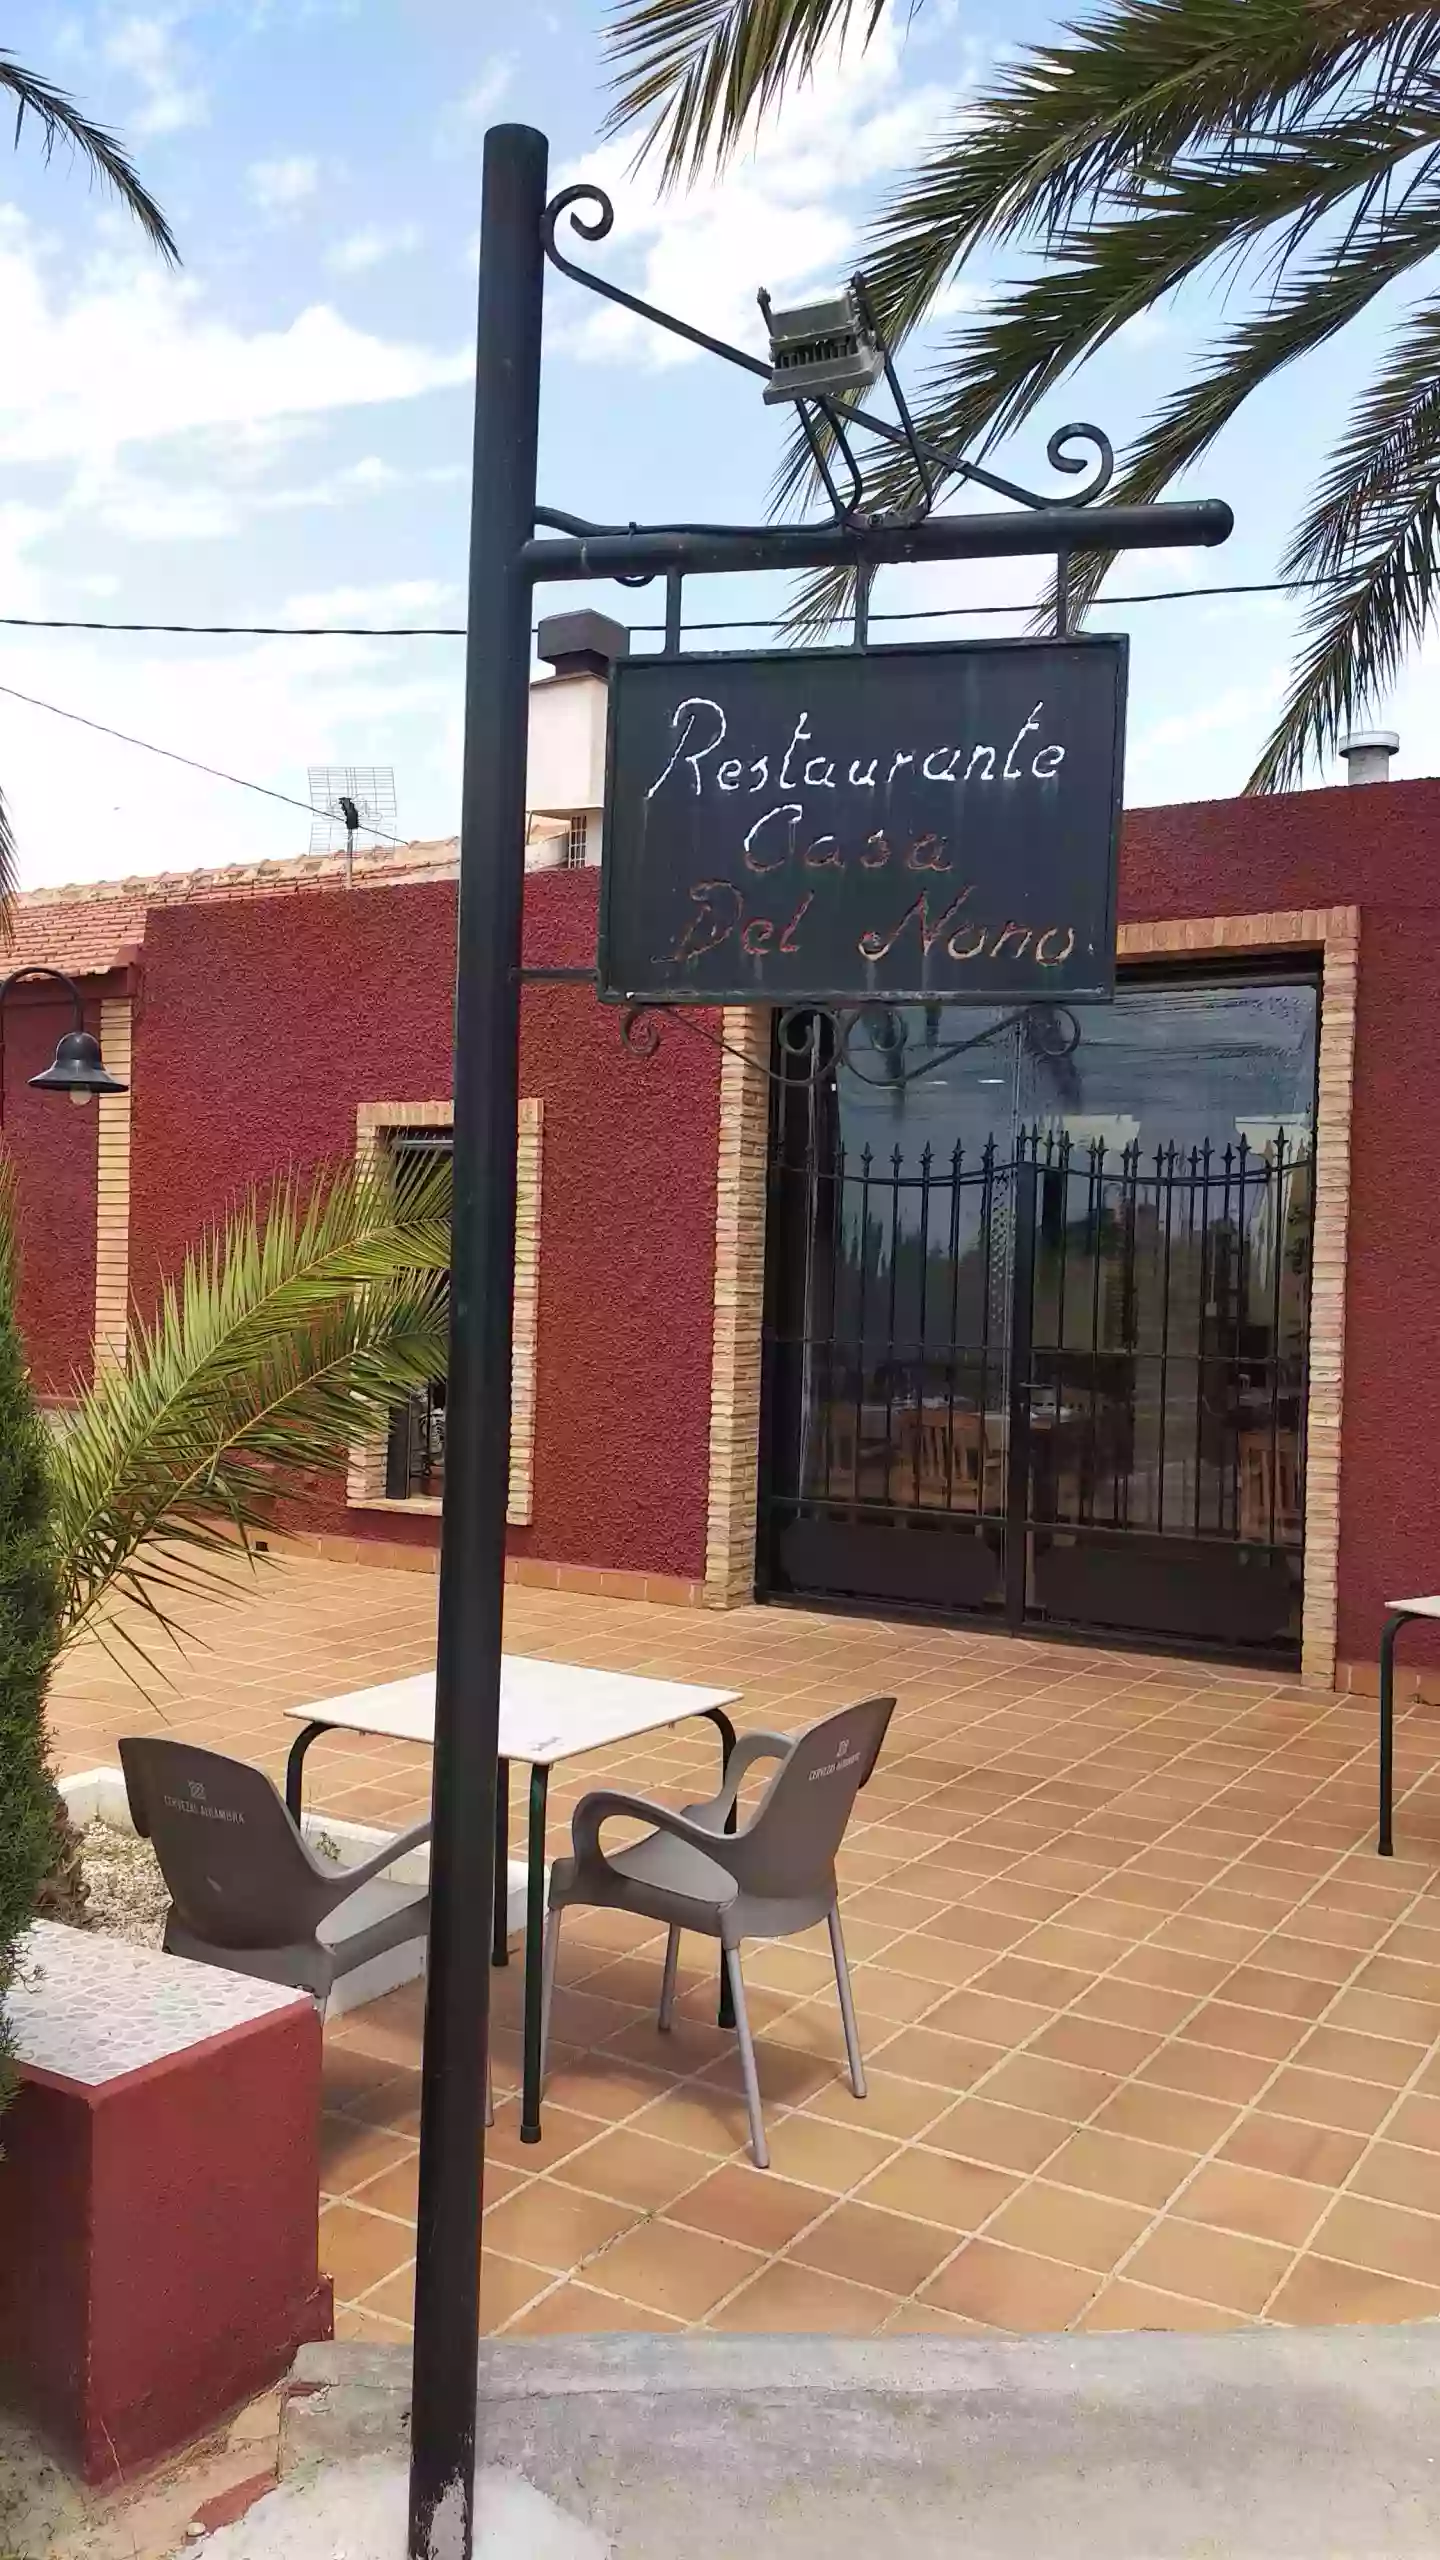 Restaurante Casa Del Nono